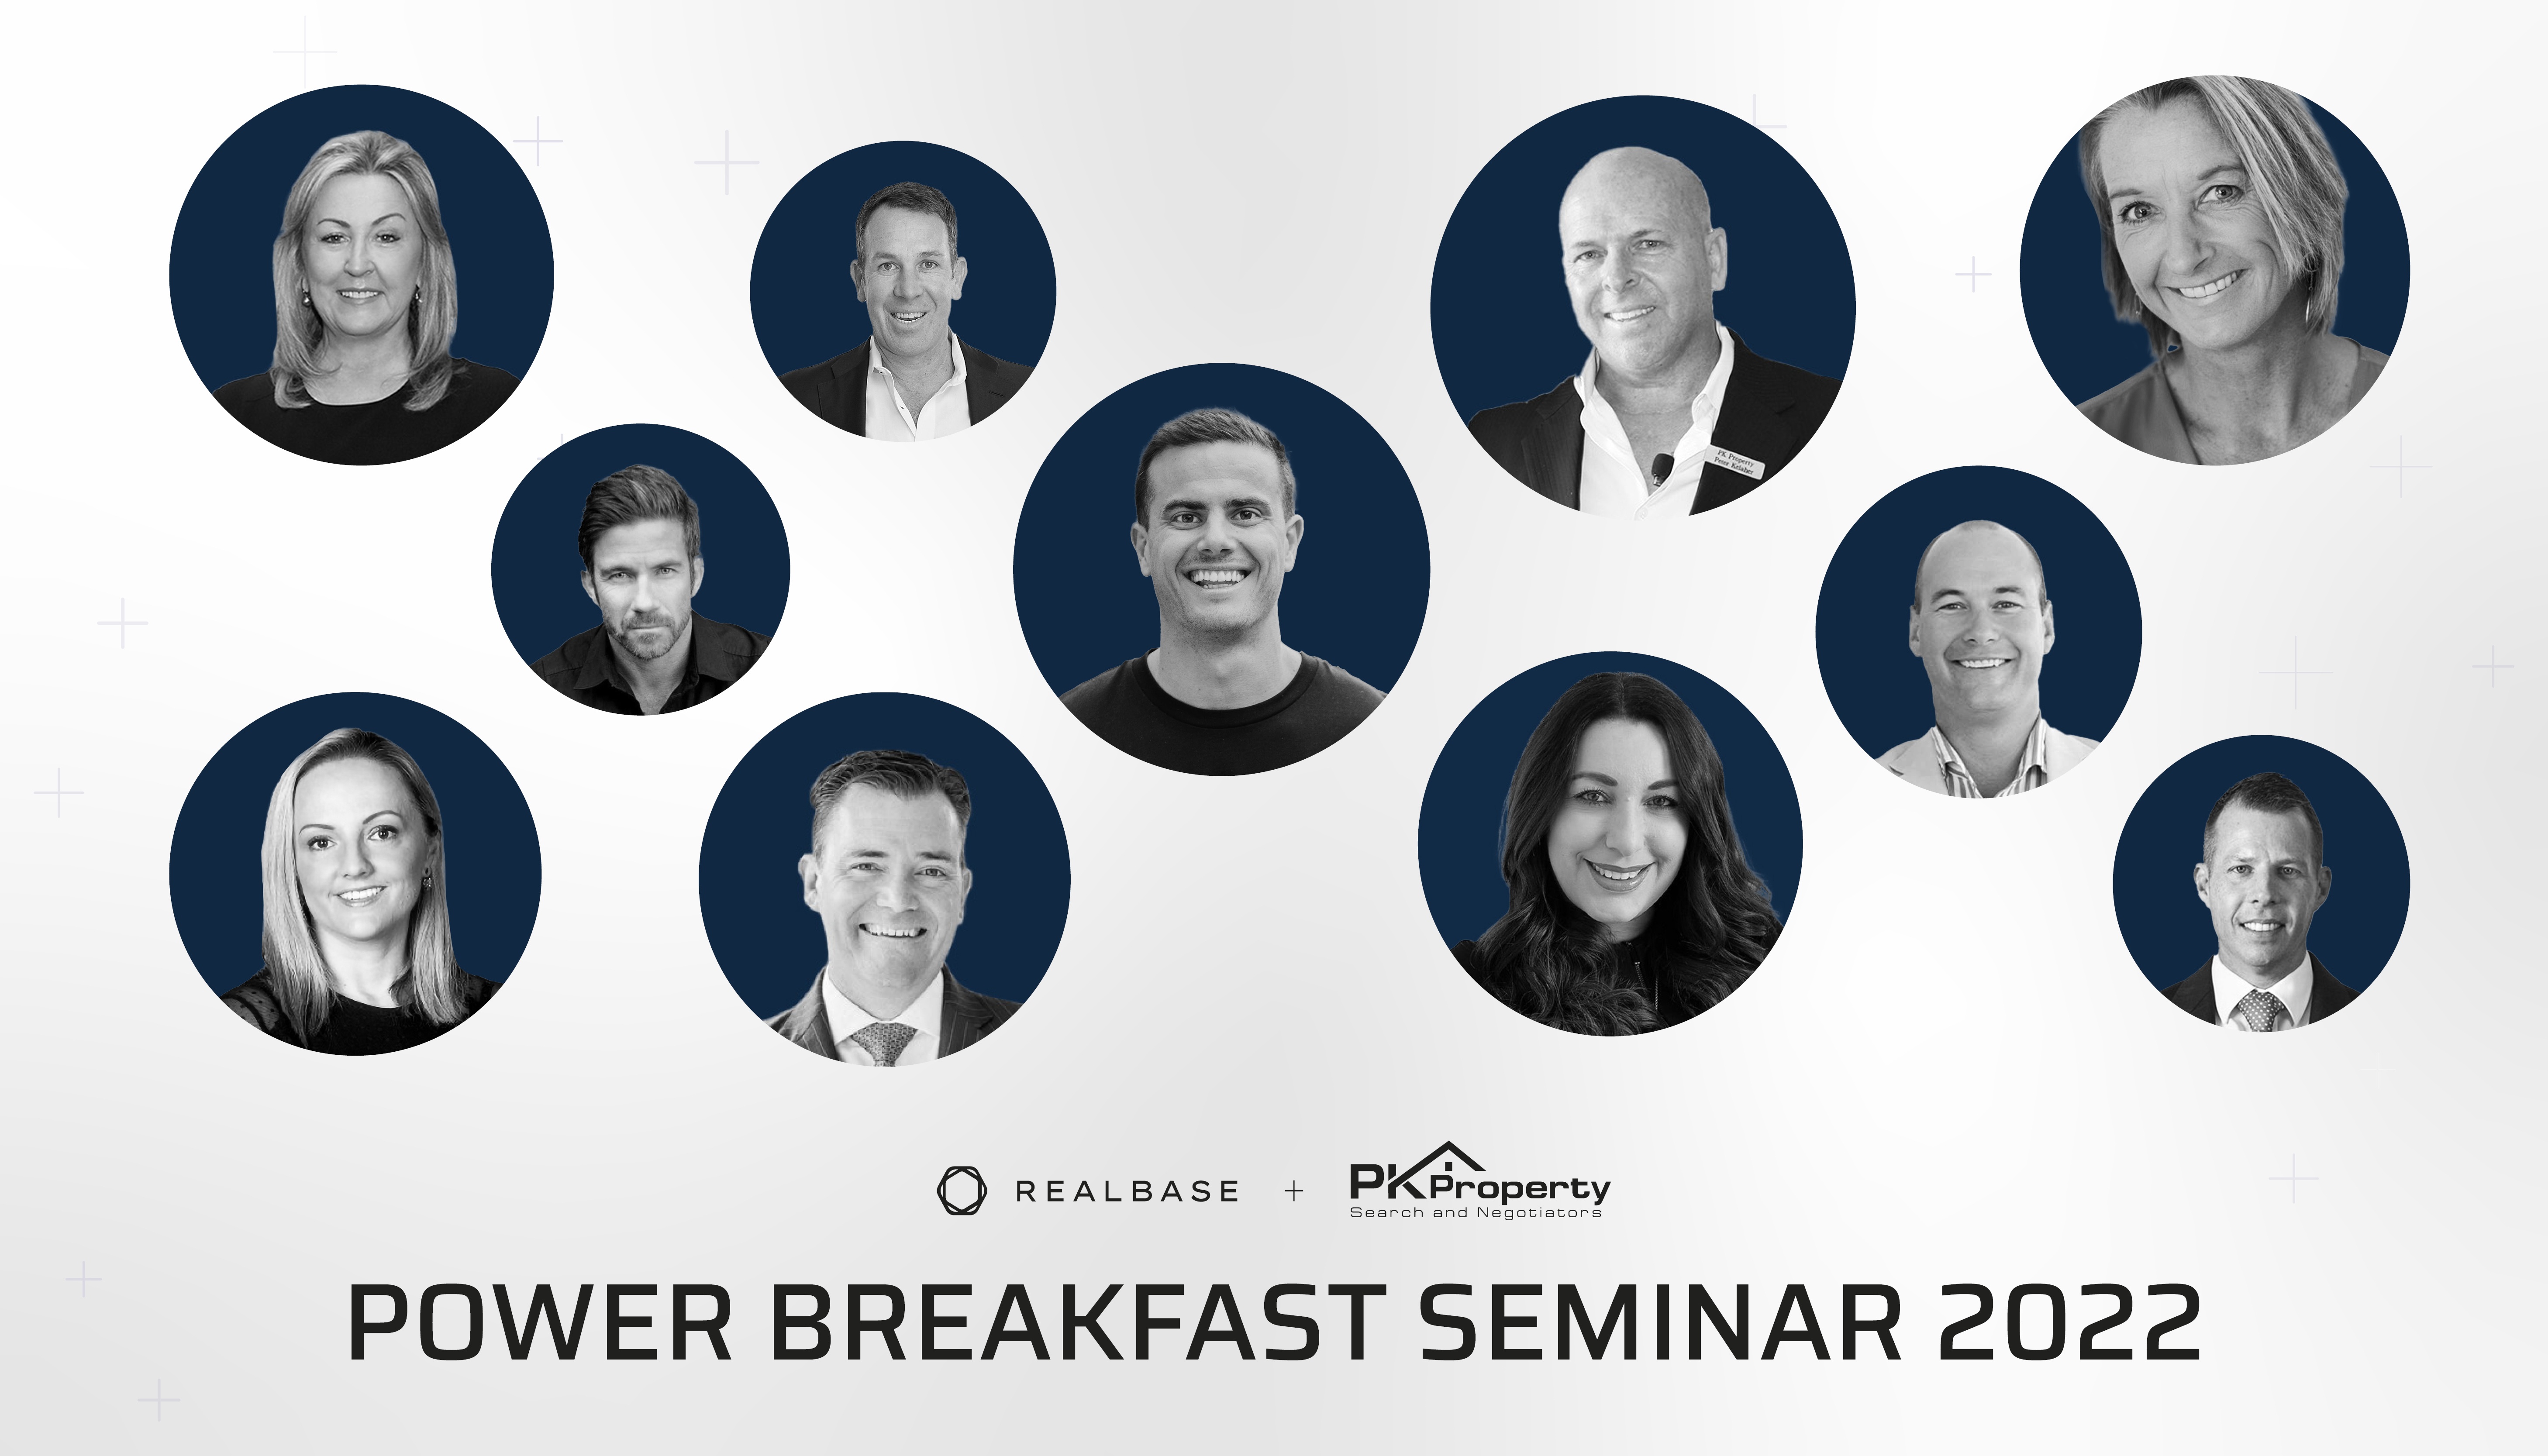 Power Breakfast Seminar 2022